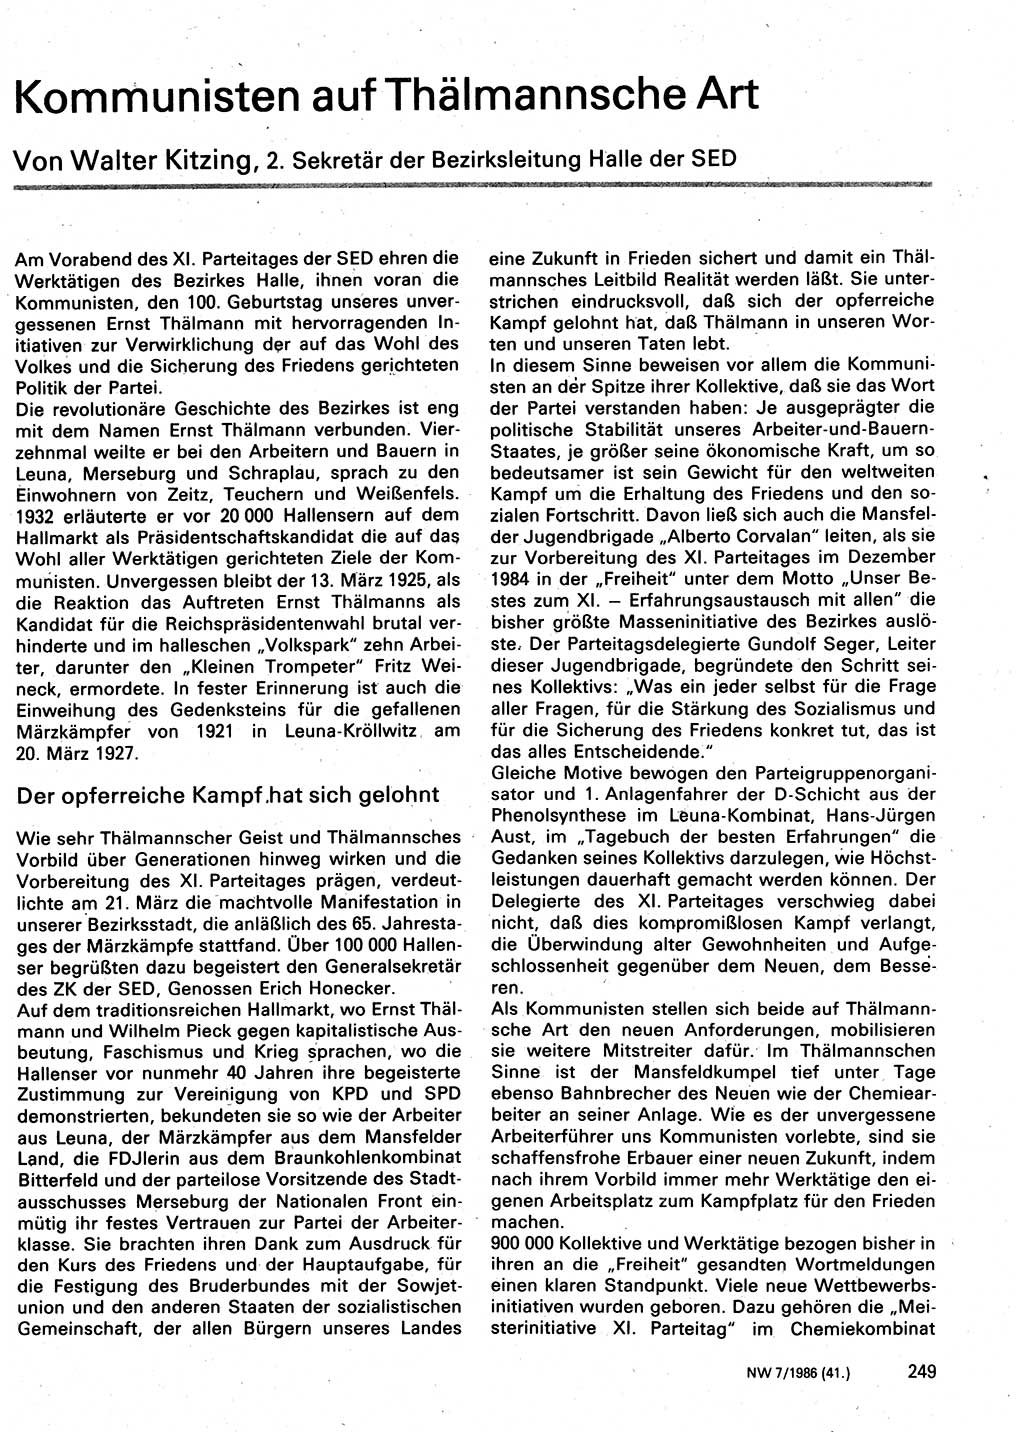 Neuer Weg (NW), Organ des Zentralkomitees (ZK) der SED (Sozialistische Einheitspartei Deutschlands) für Fragen des Parteilebens, 41. Jahrgang [Deutsche Demokratische Republik (DDR)] 1986, Seite 249 (NW ZK SED DDR 1986, S. 249)